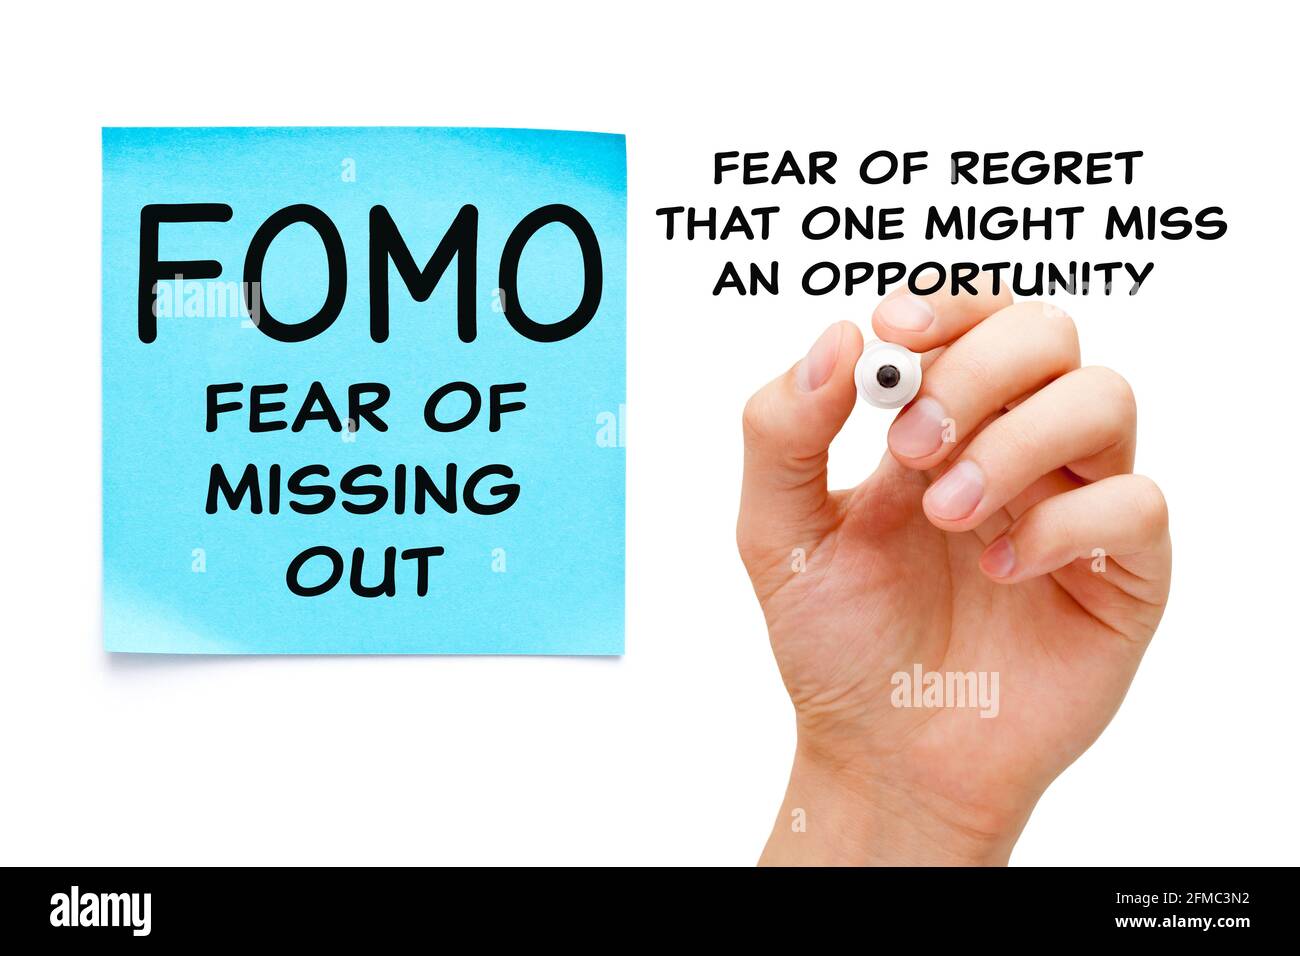 Hand schreiben ein Konzept über Angst vor dem Verfehlen - FOMO soziale Angststörung. Angst vor Bedauern, dass man eine Gelegenheit verpassen könnte. Stockfoto